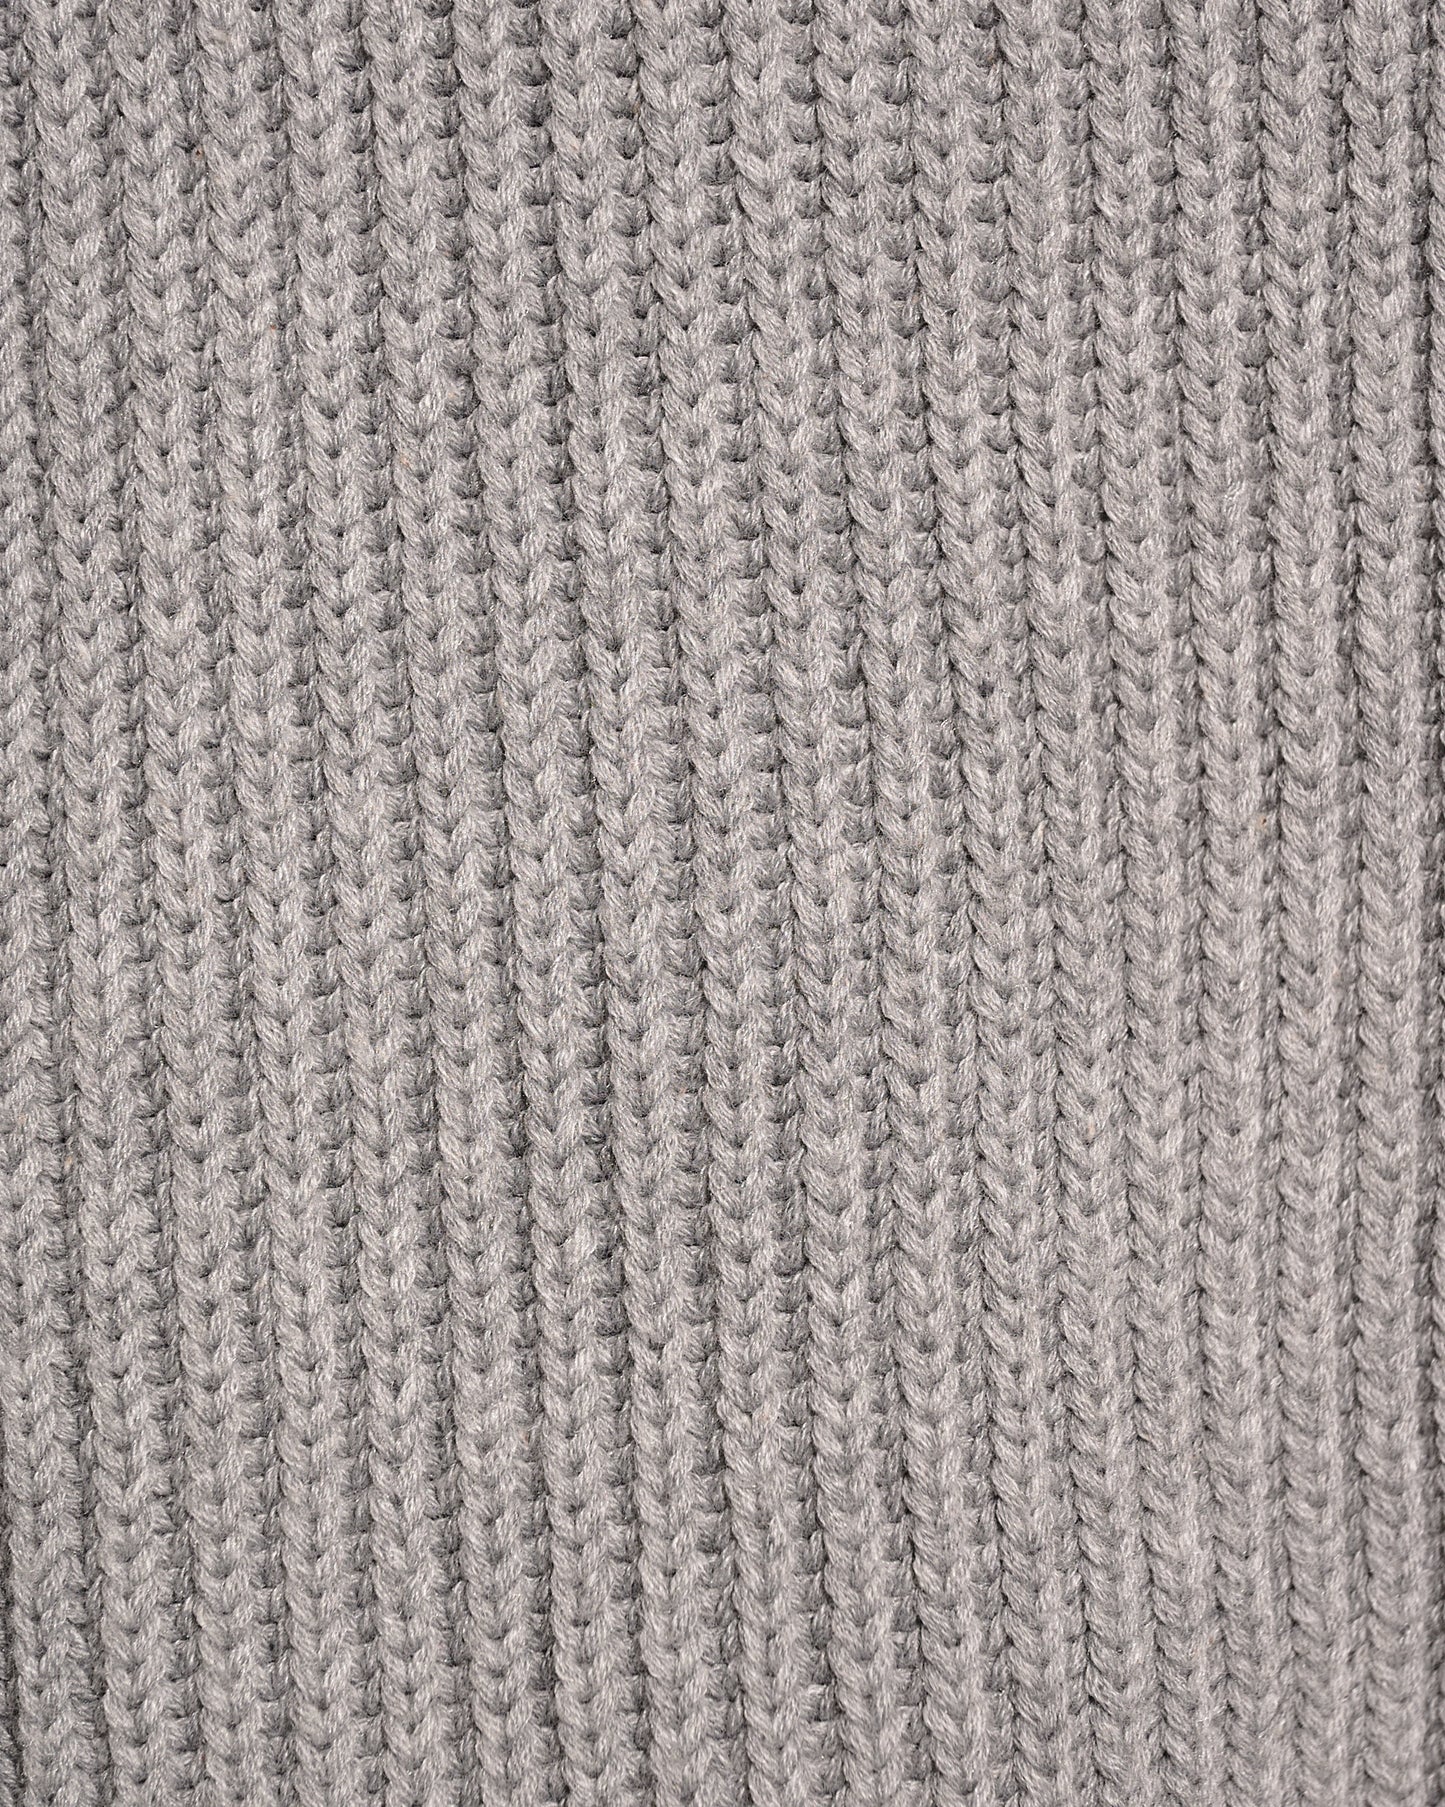 aalis TEAGEN zip up turtleneck knit vest (Heather grey)